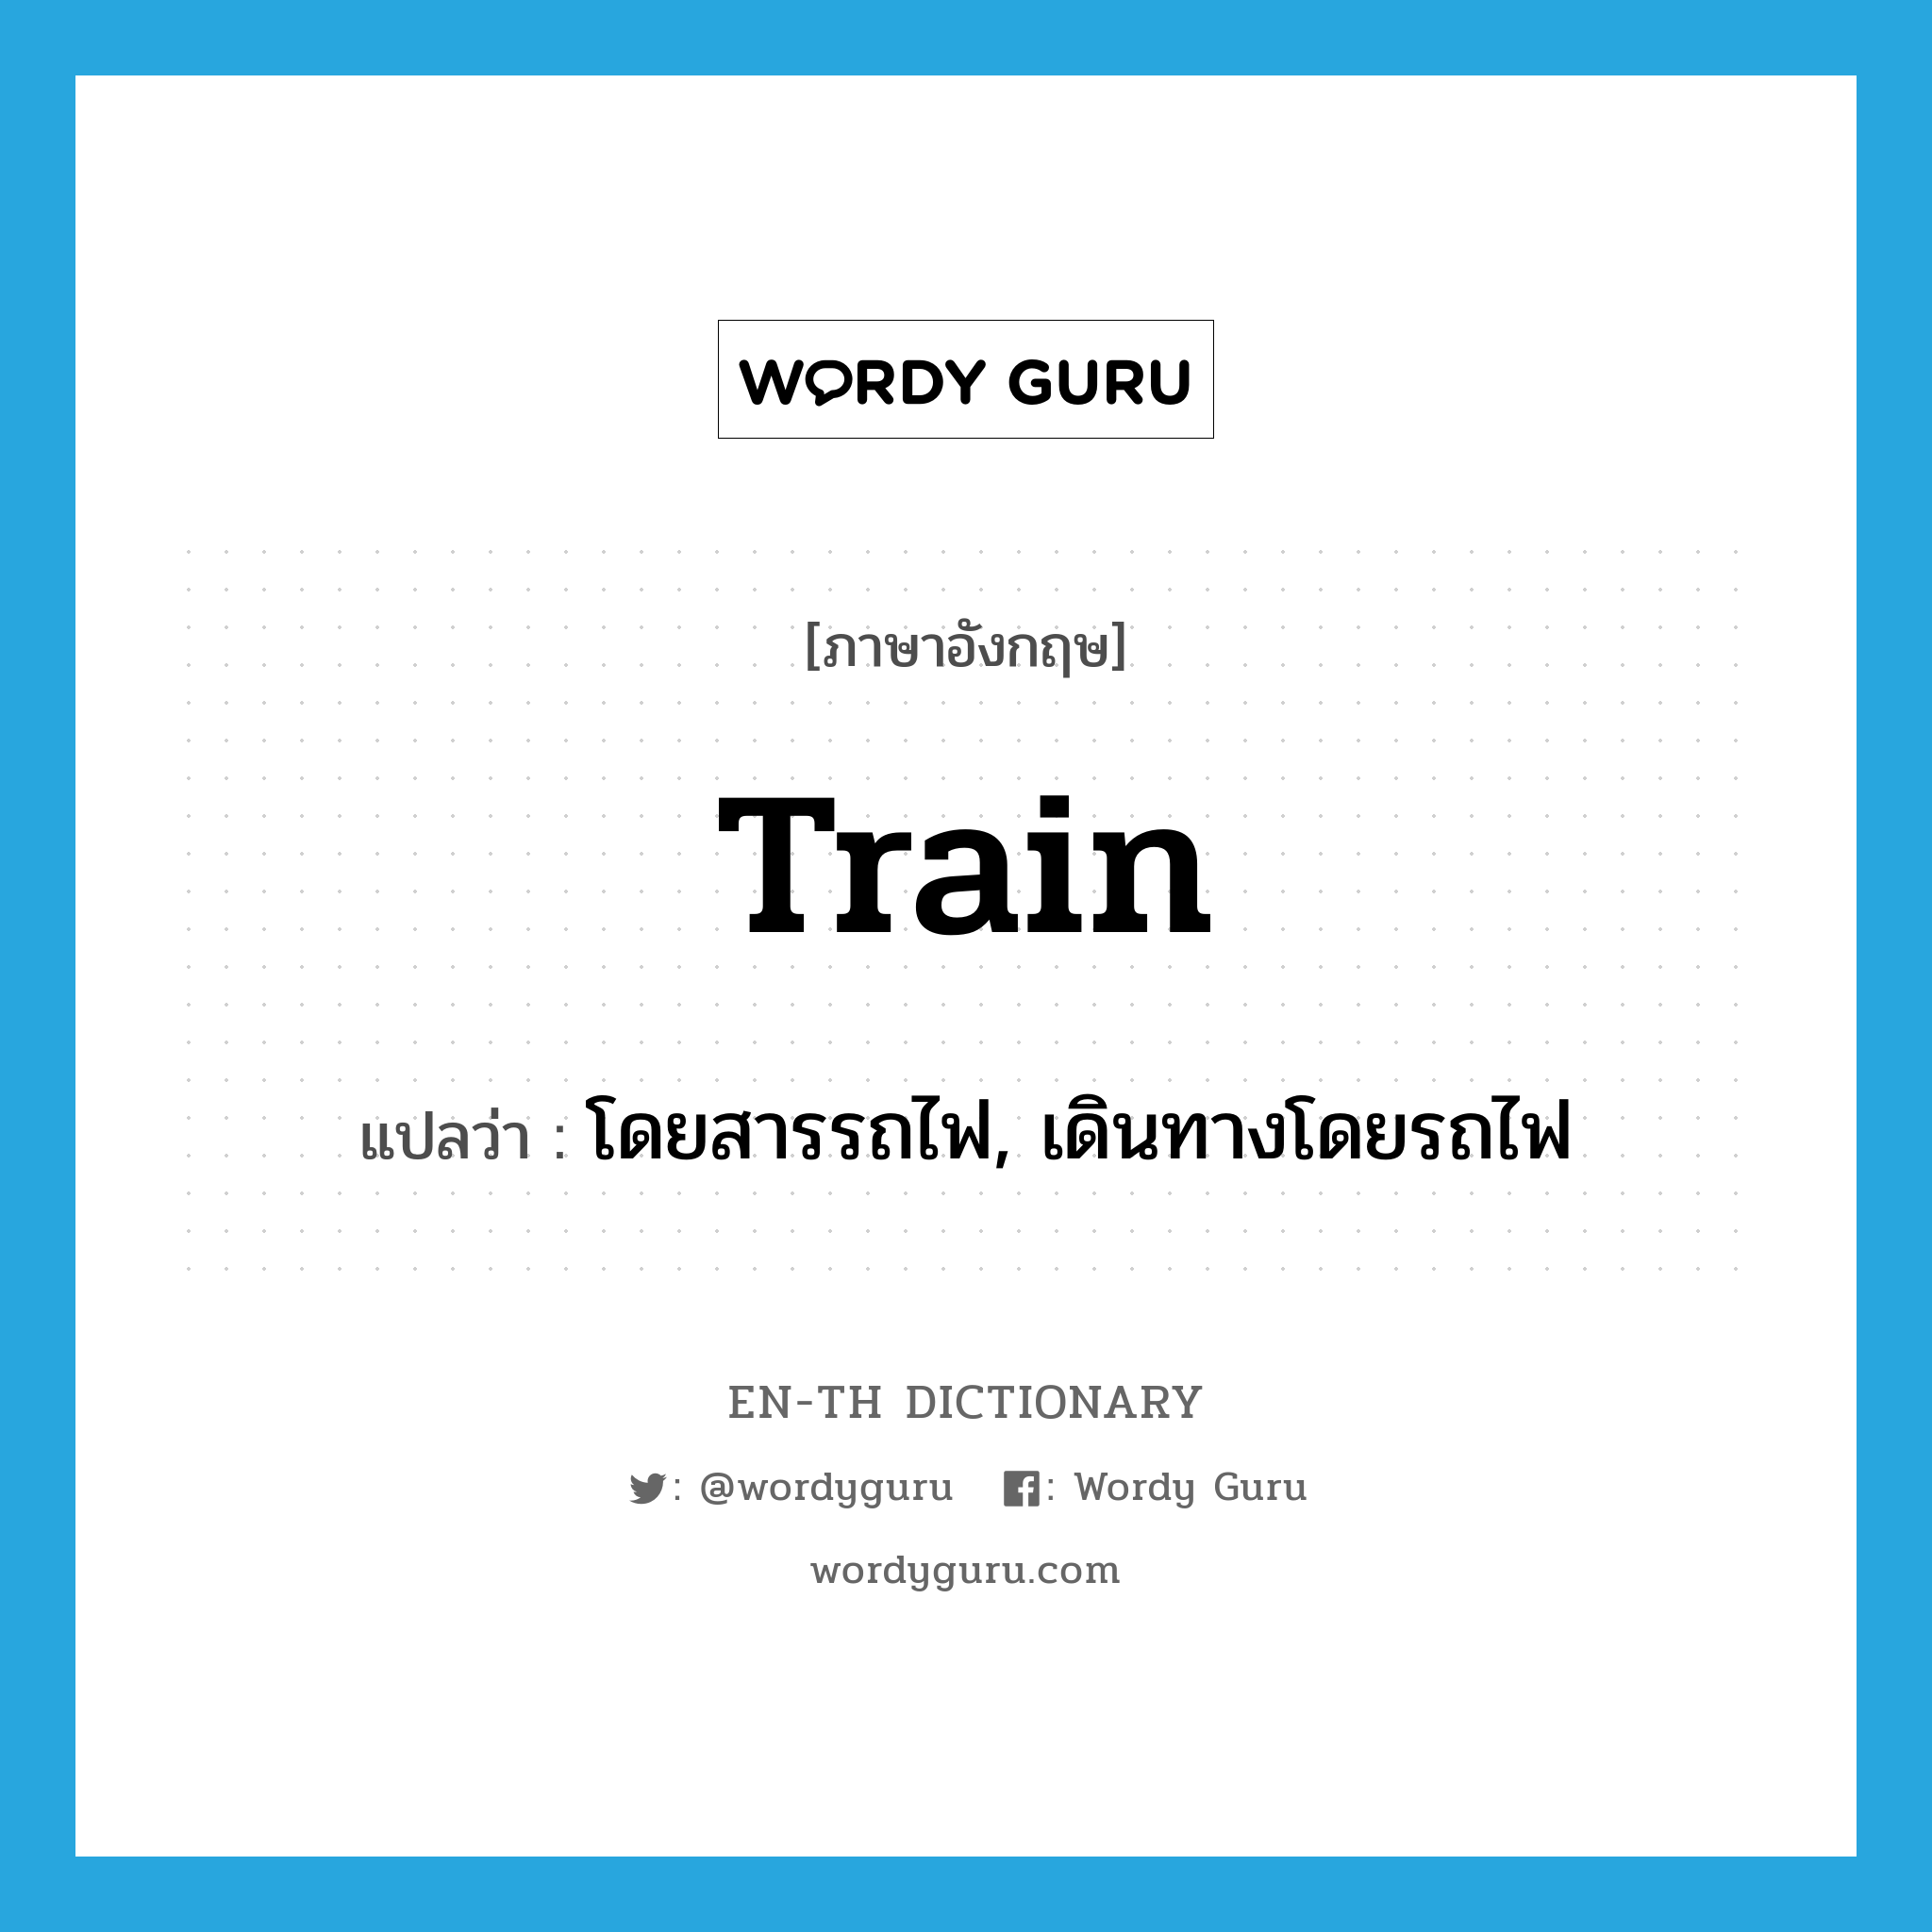 โดยสารรถไฟ, เดินทางโดยรถไฟ ภาษาอังกฤษ?, คำศัพท์ภาษาอังกฤษ โดยสารรถไฟ, เดินทางโดยรถไฟ แปลว่า train ประเภท VI หมวด VI